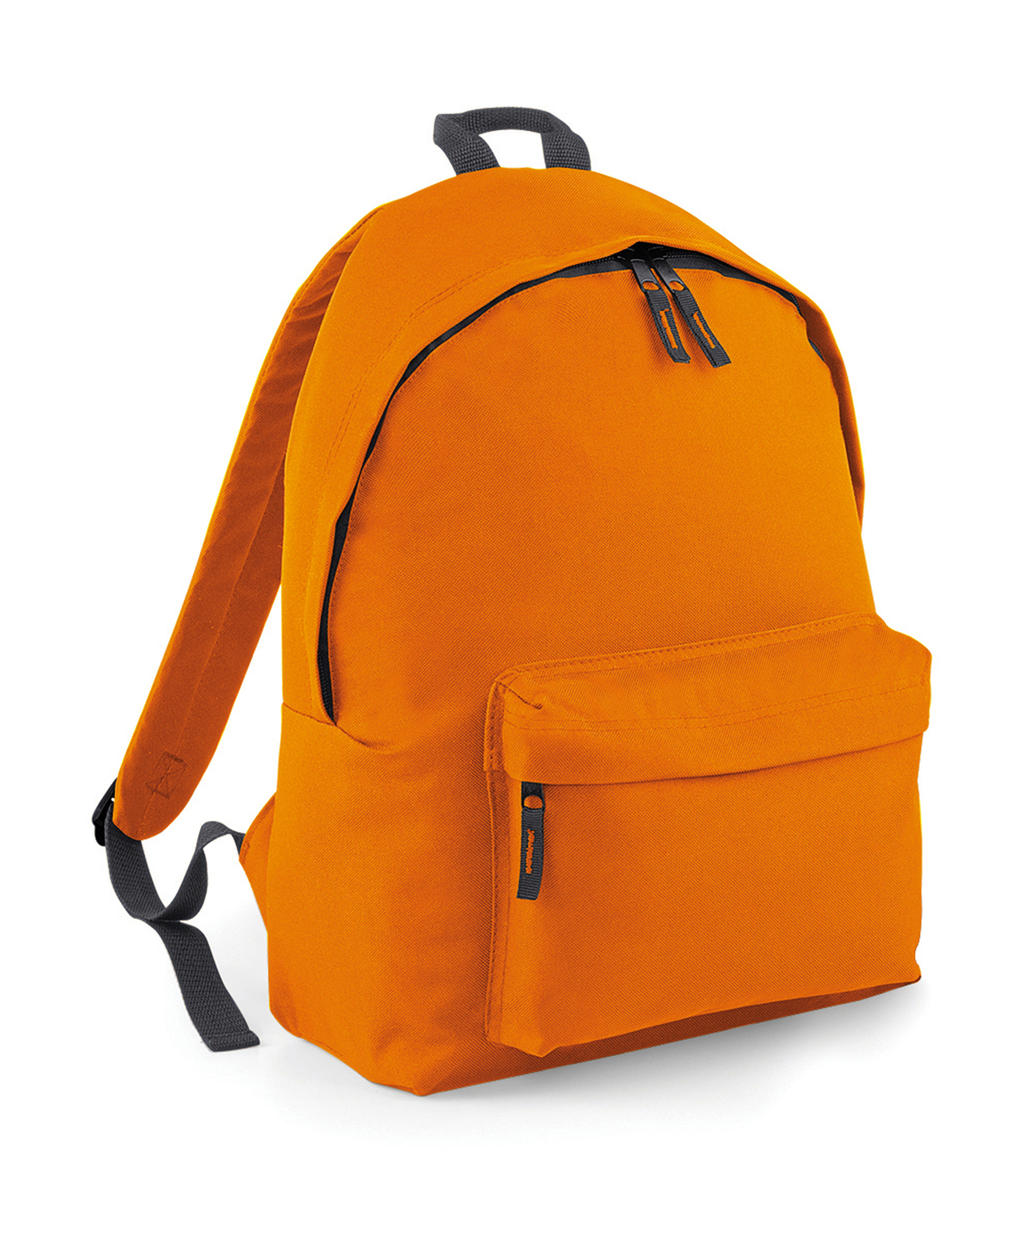  Original Fashion Backpack in Farbe Orange/Graphite Grey